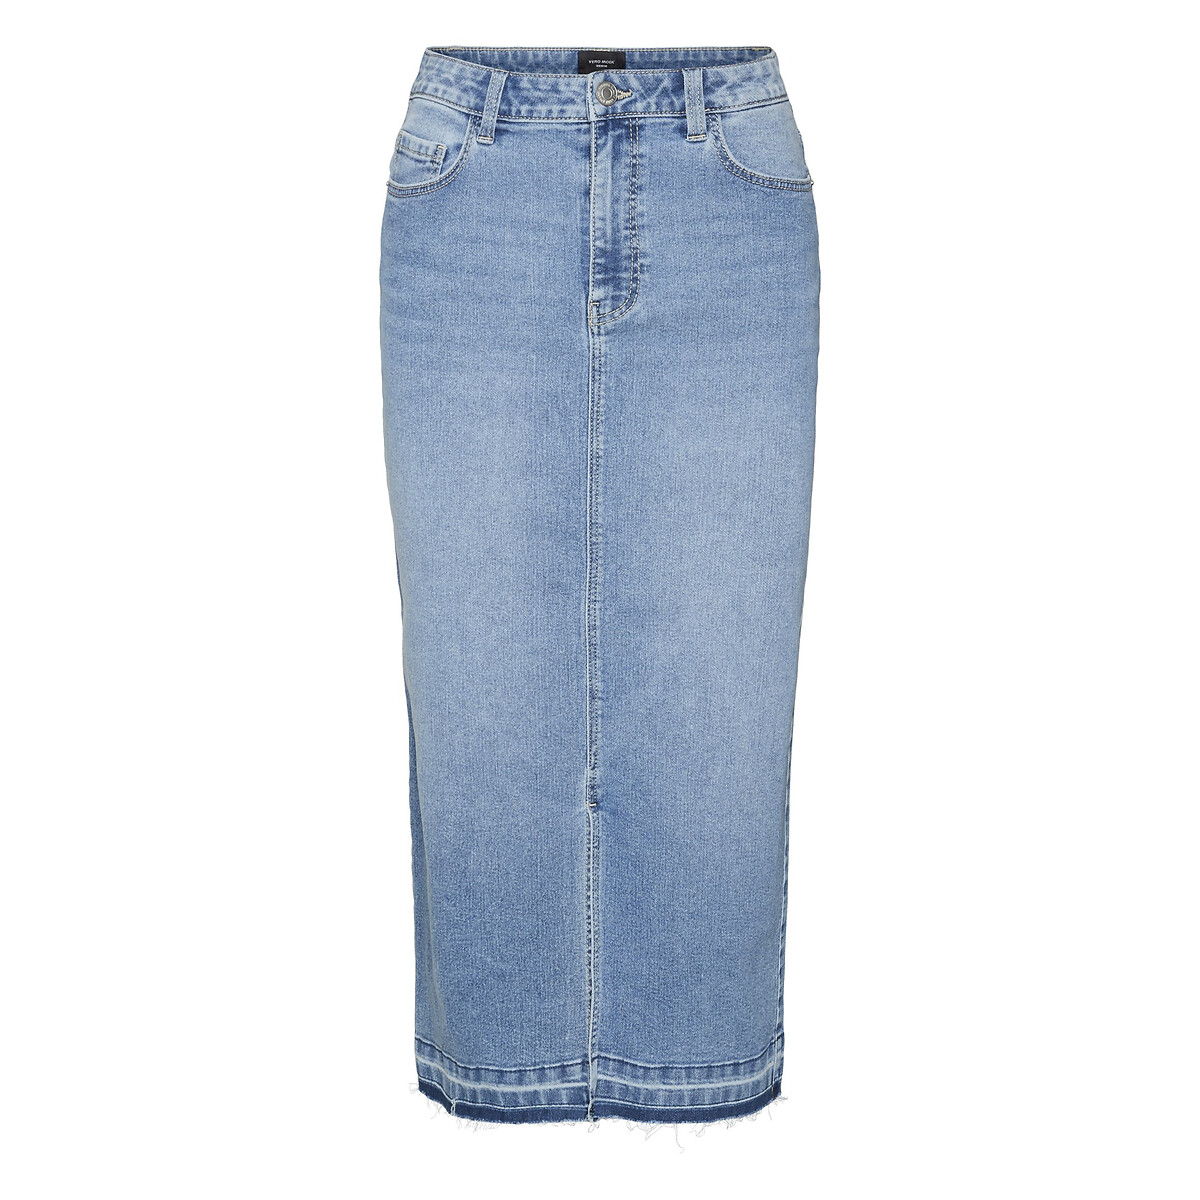 Юбка из джинсовой ткани с высокой посадкой  XS синий LaRedoute, размер XS